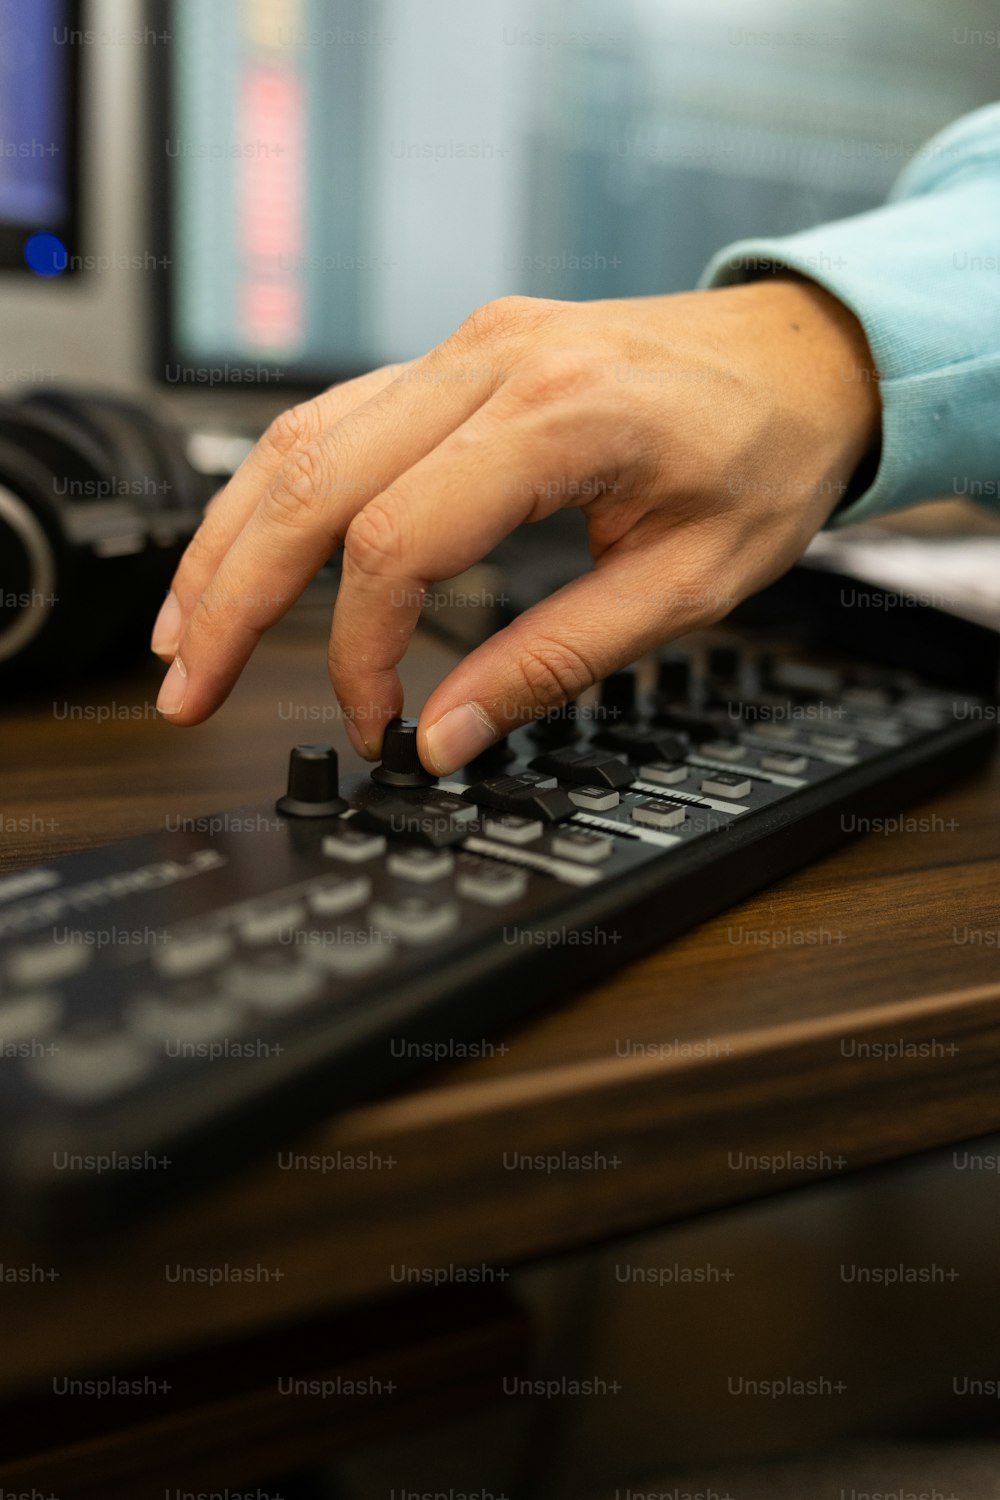 Eine Person drückt Tasten auf einer Tastatur